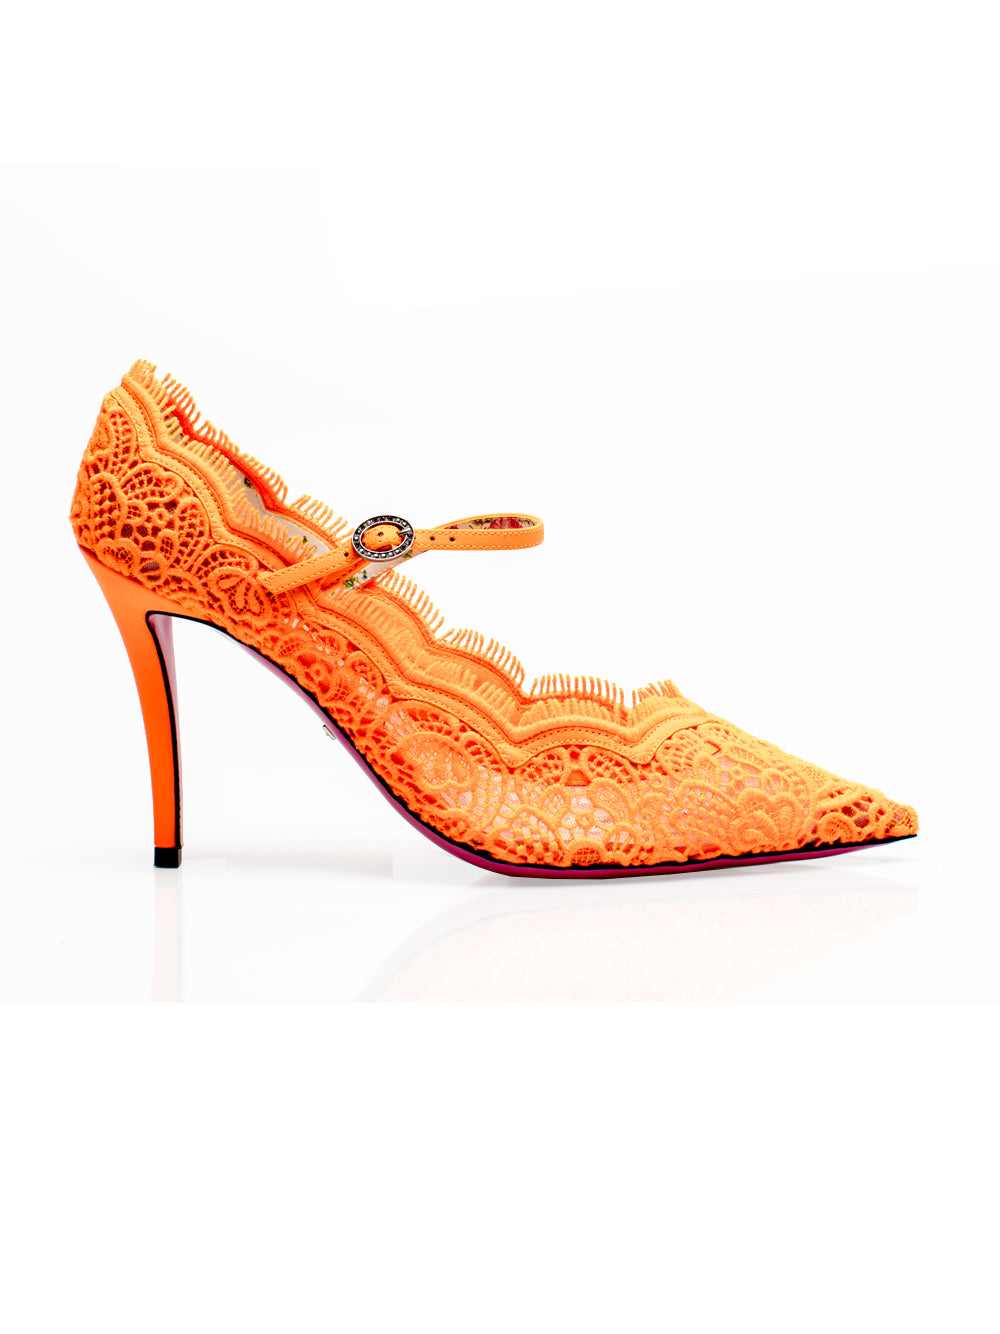 orange pumps heels